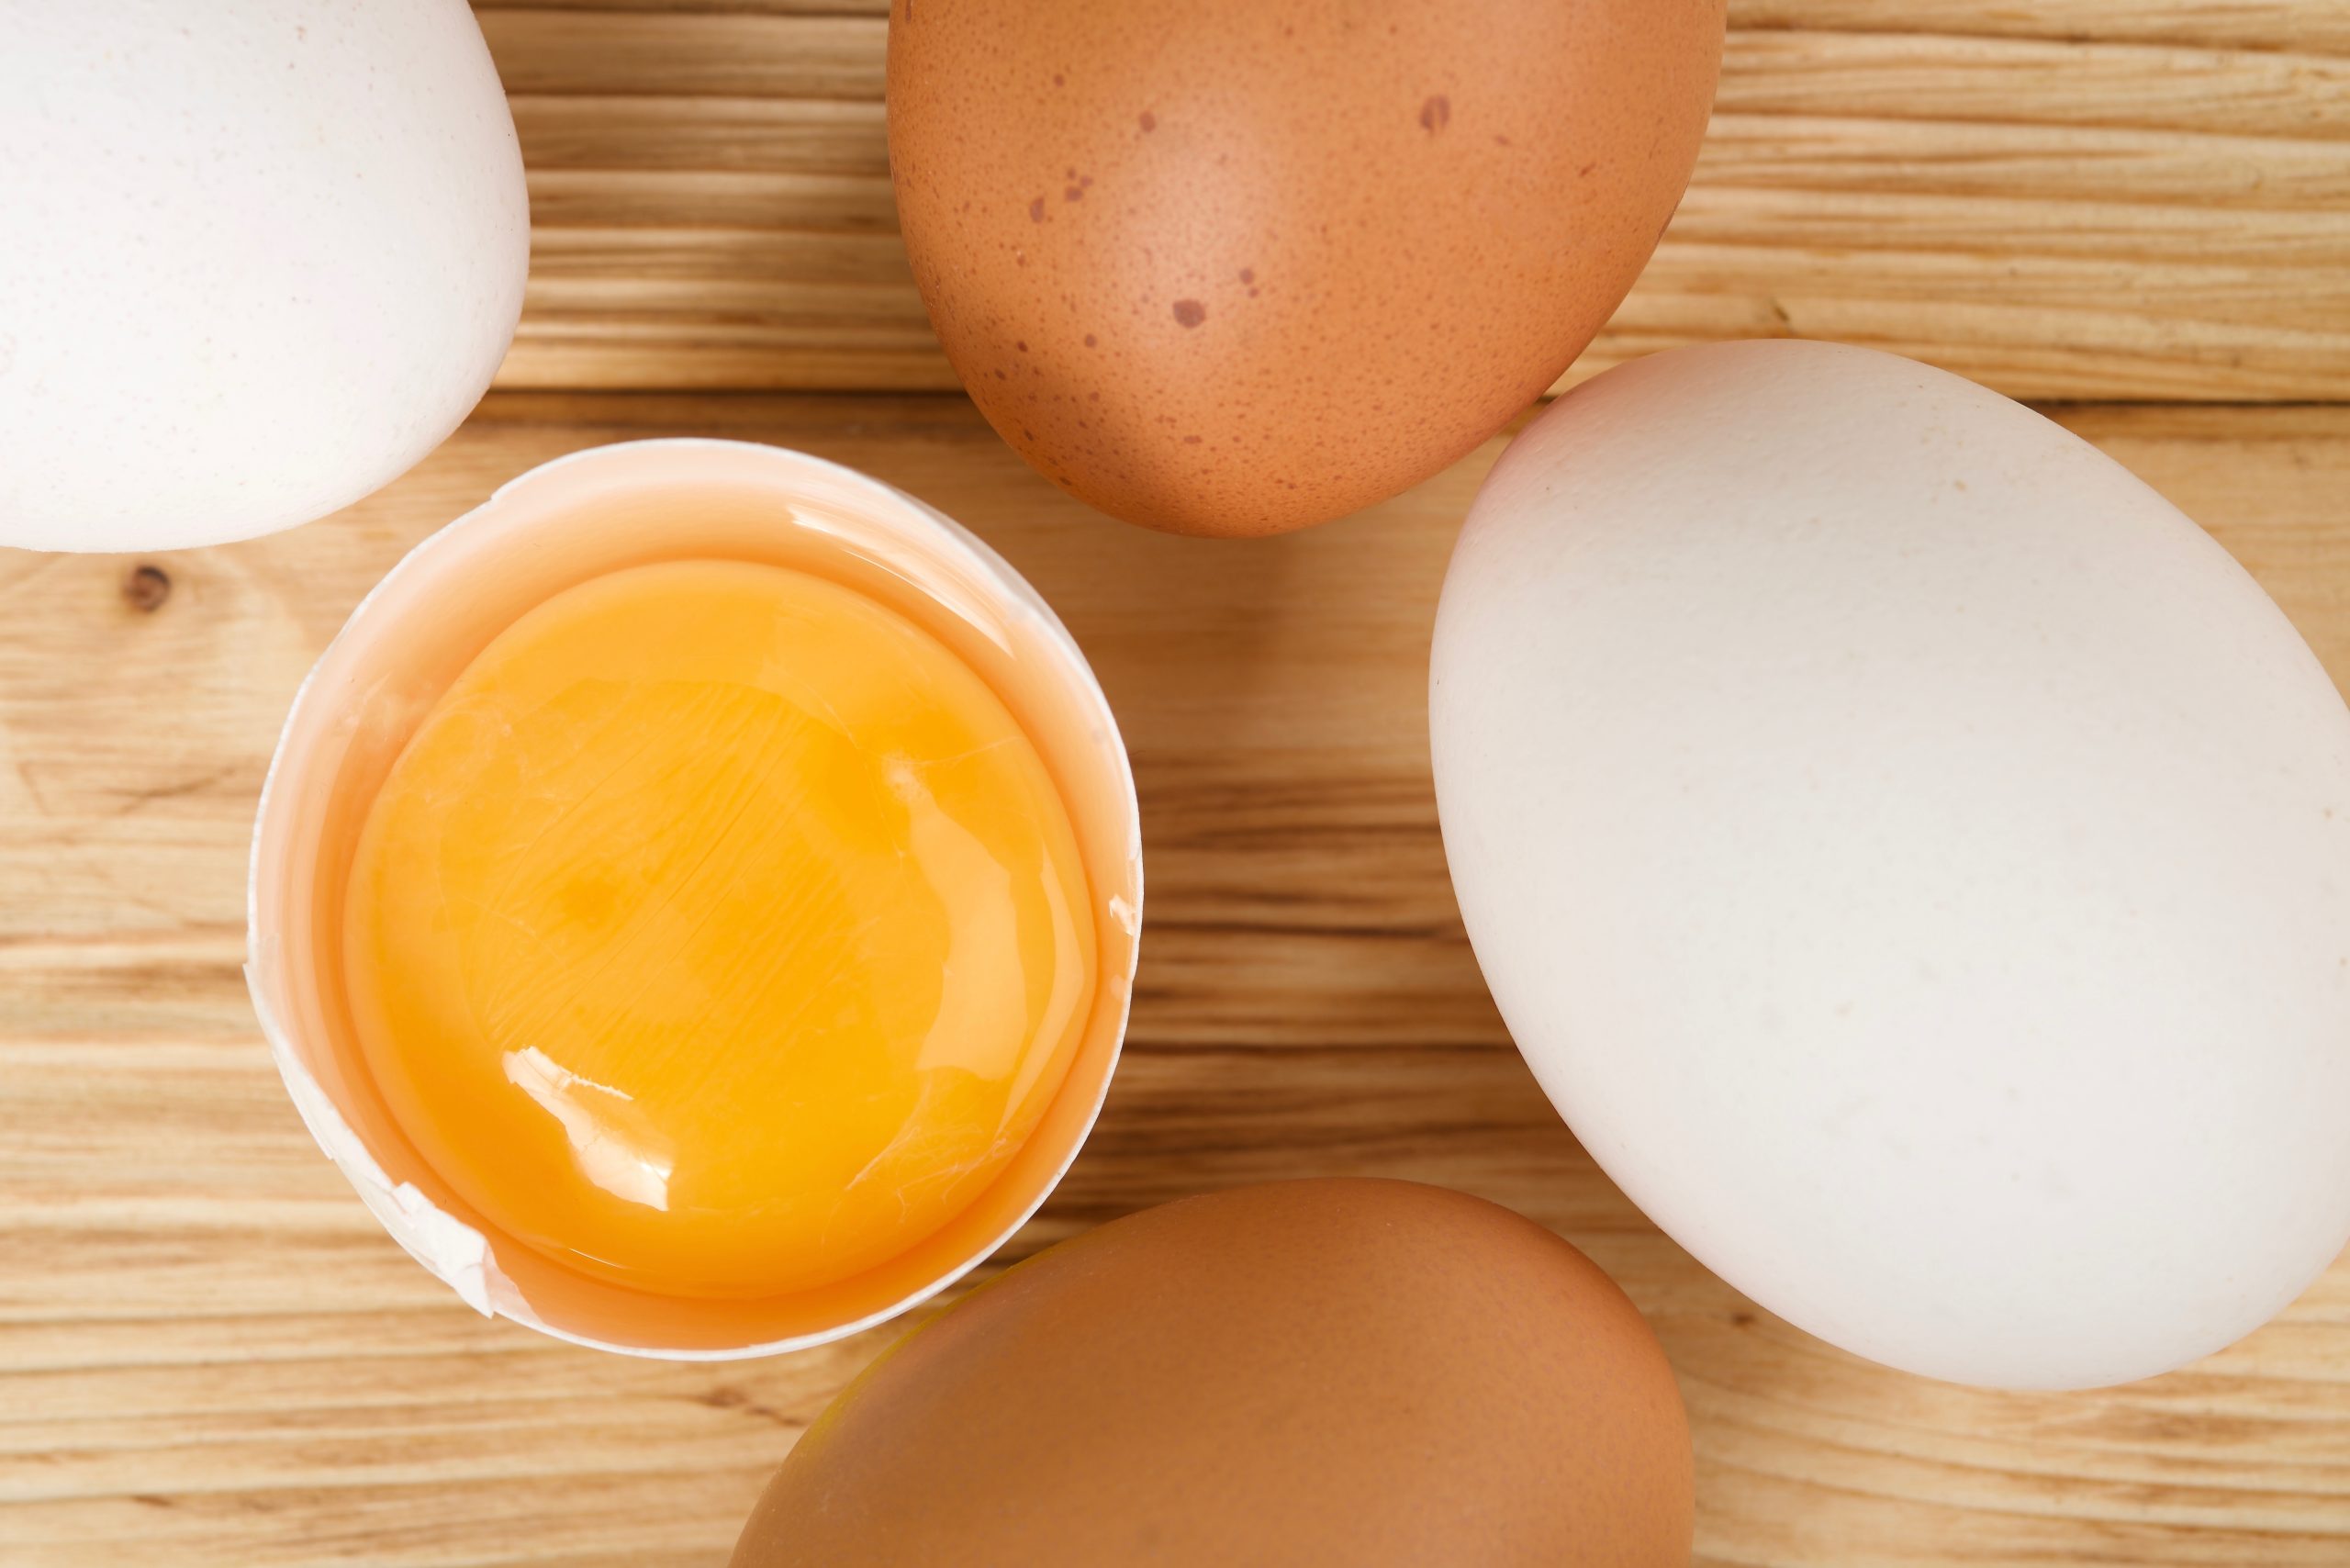 Os ovos têm várias cores. Sabe porquê?